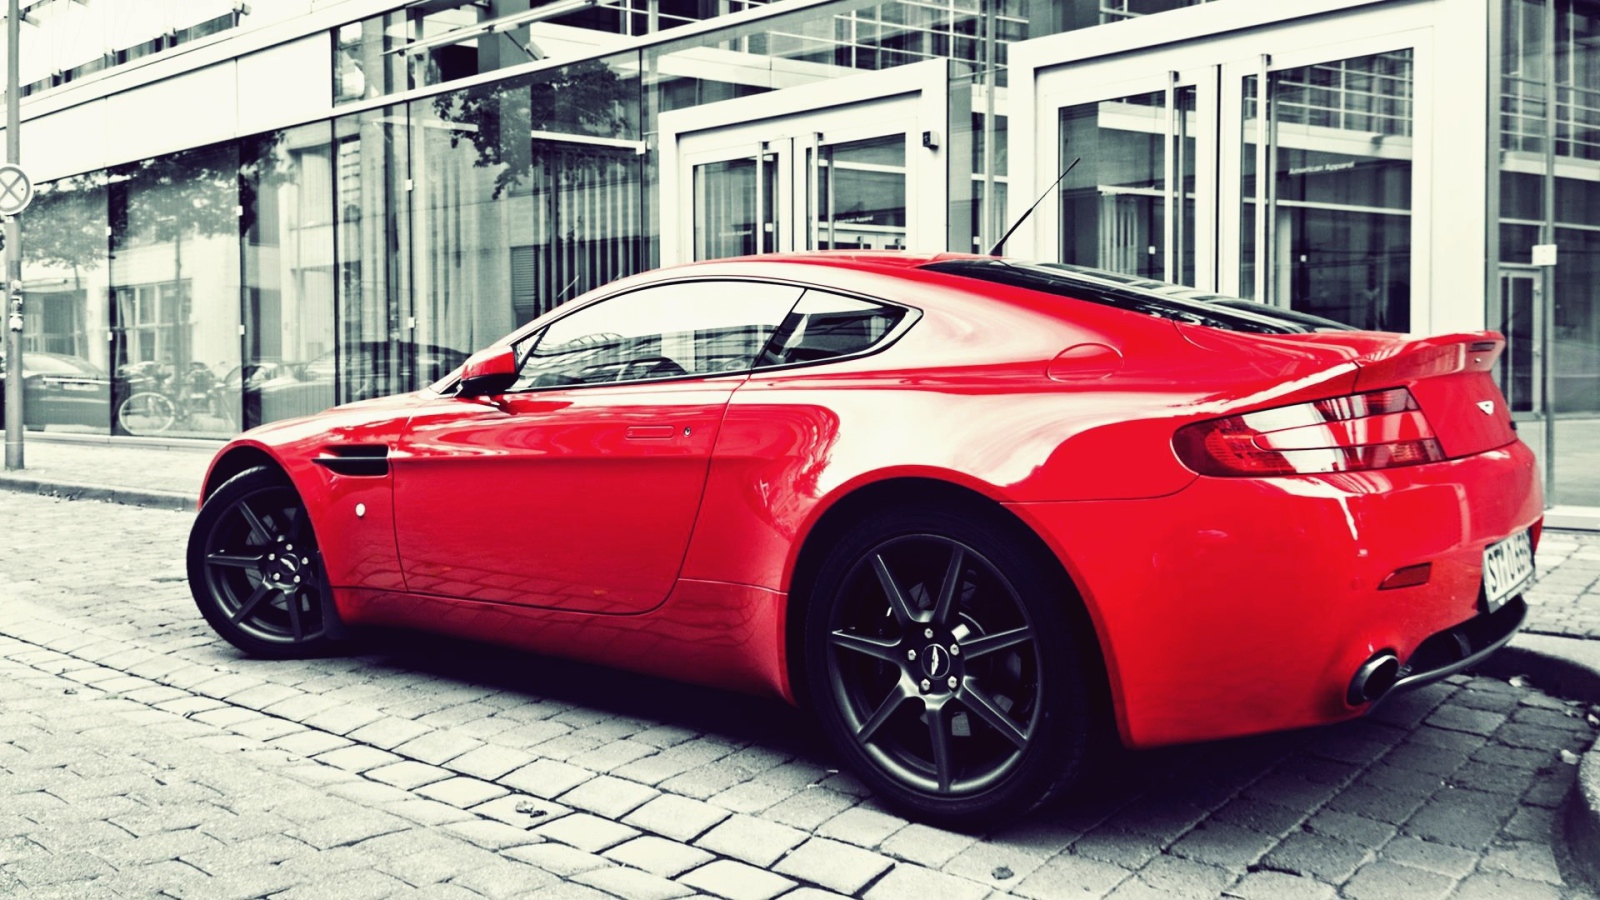 Красный Aston Martin Vanquish на улице